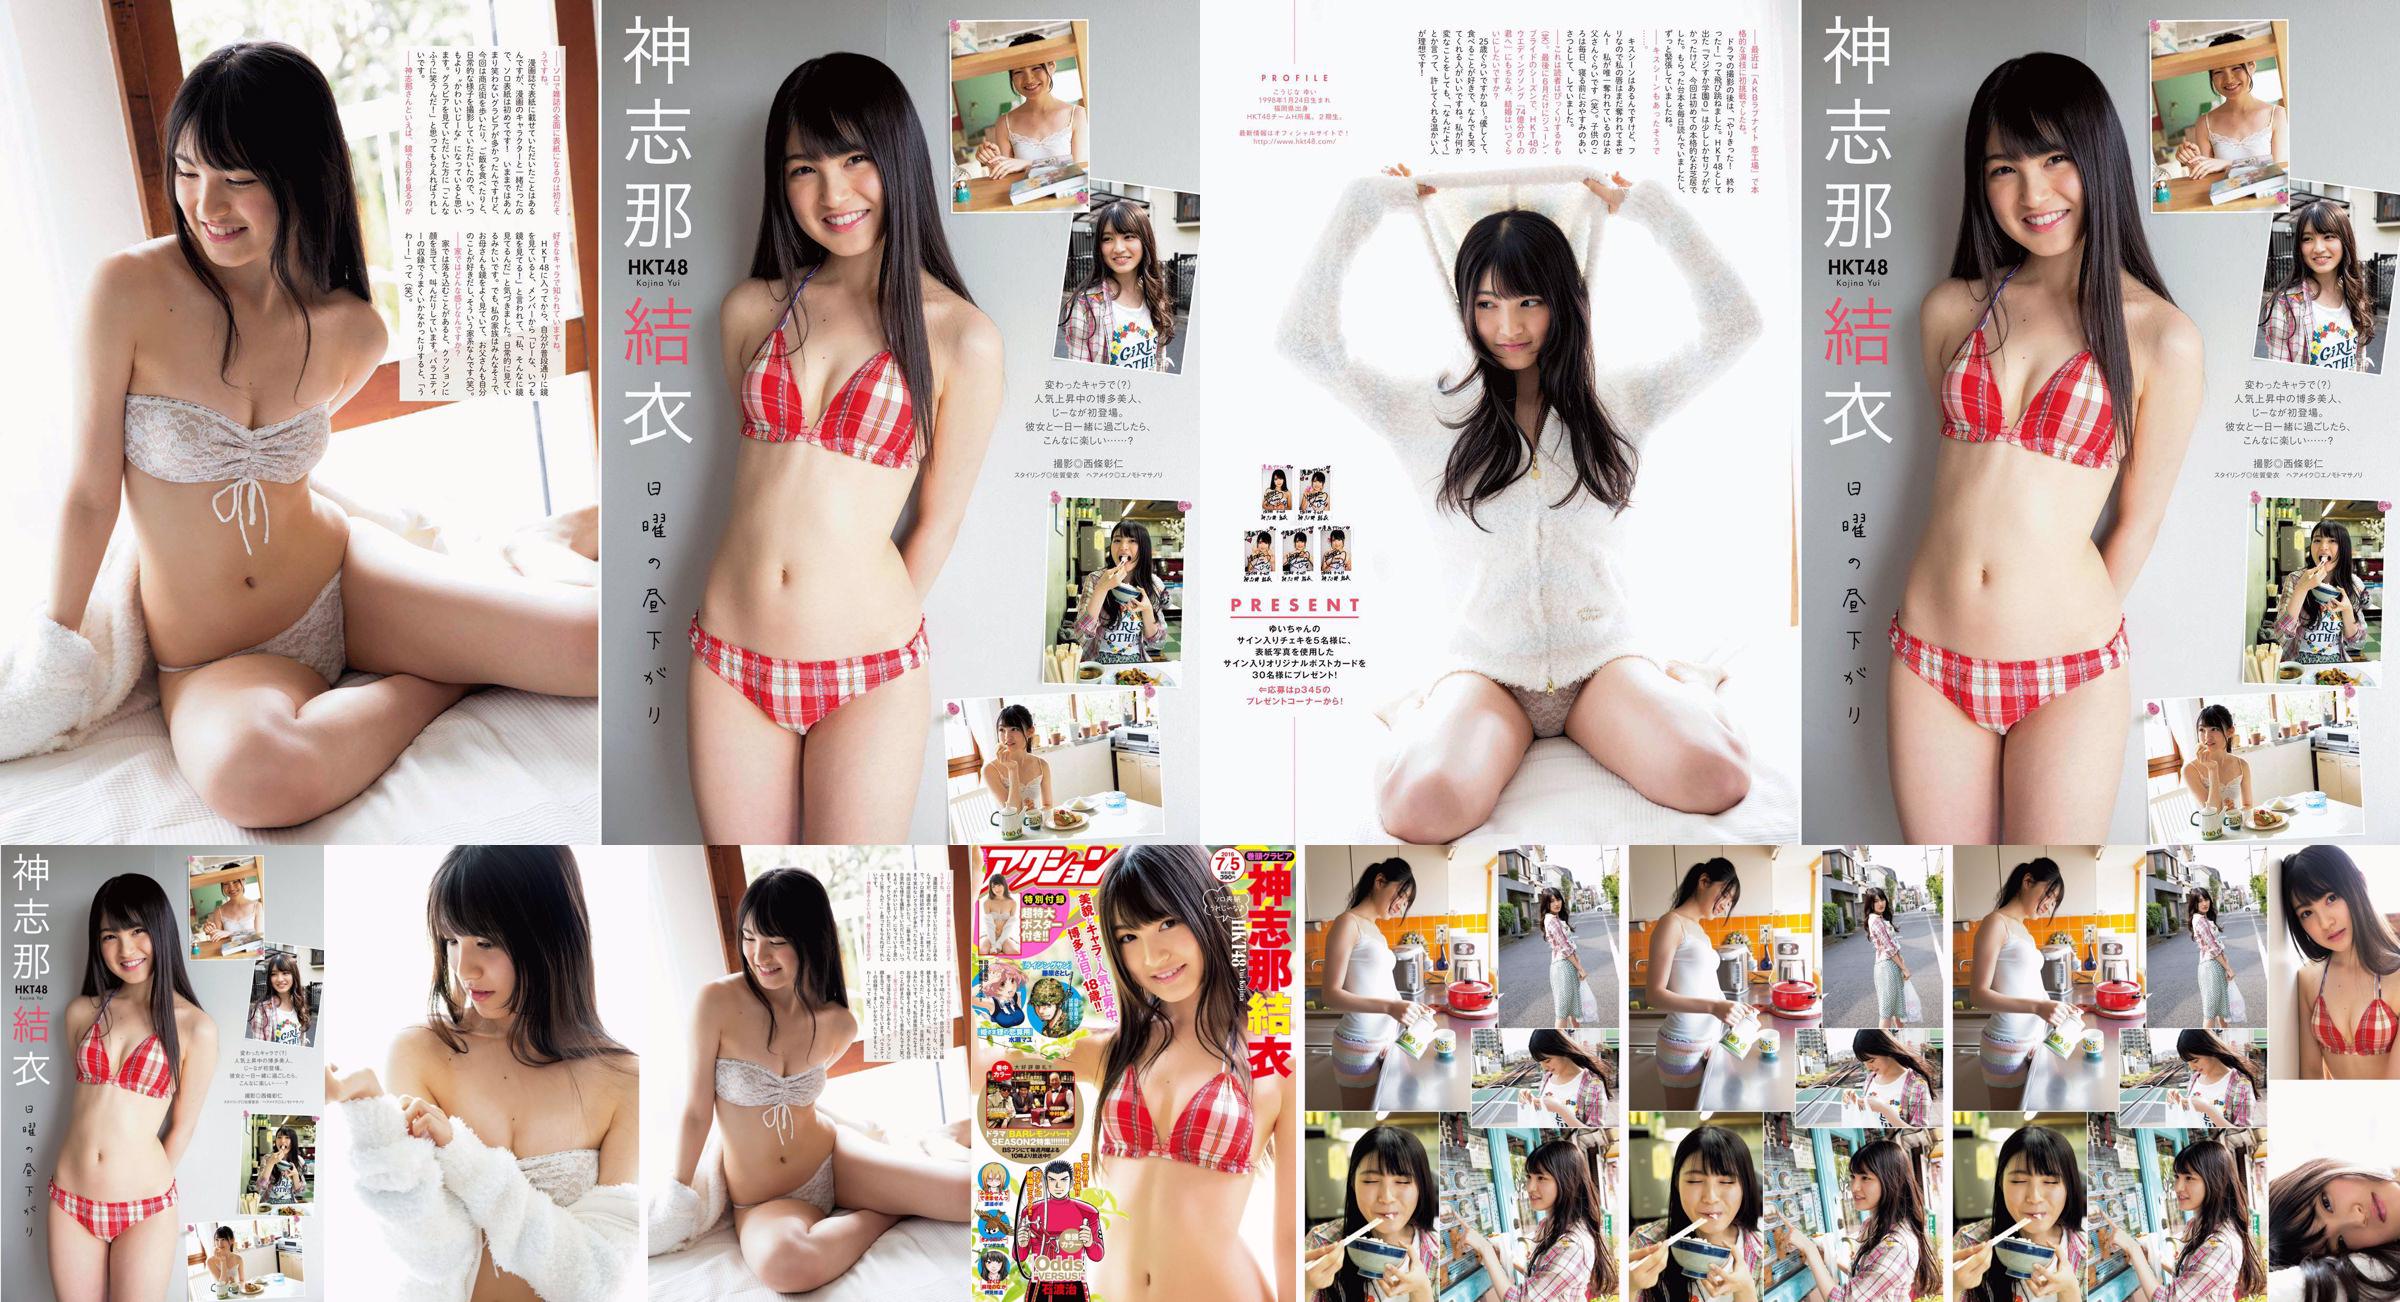 [Manga Action] Shinshina Yui 2016 No.13 Photo Magazine No.75cc1e Página 4